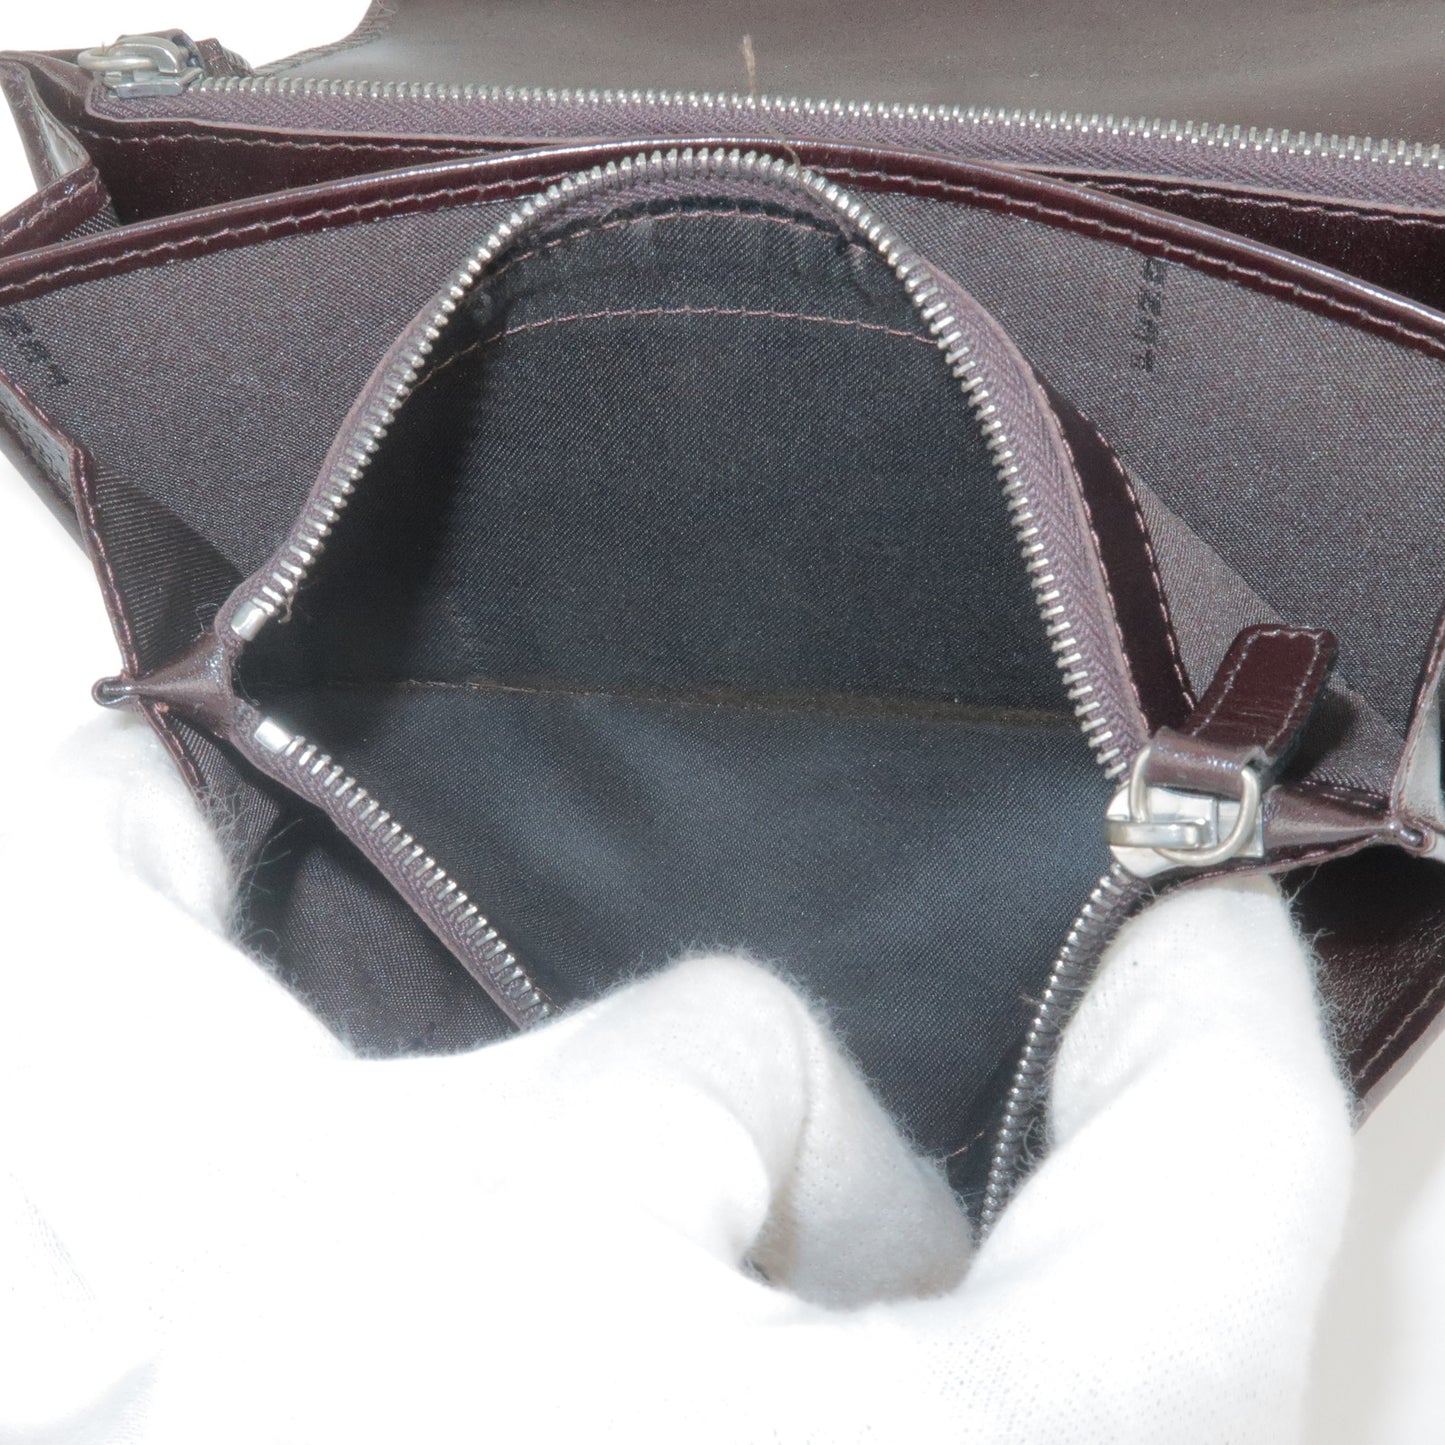 FENDI Zucca Canvas Leather Bi Fold Long Wallet Beige Black